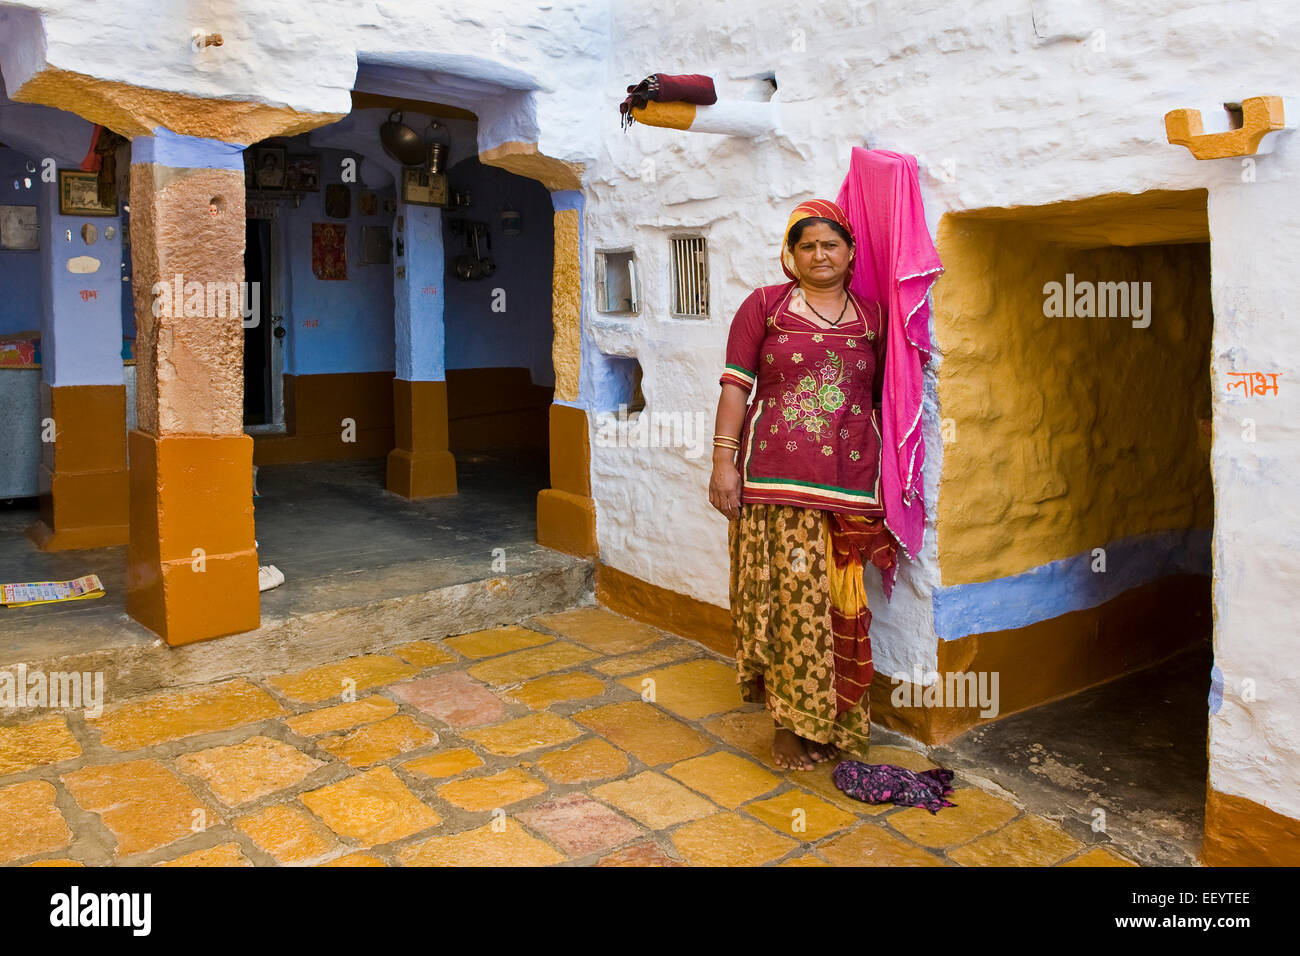 India, Rajasthan, Jaisalmer, woman at home Stock Photo